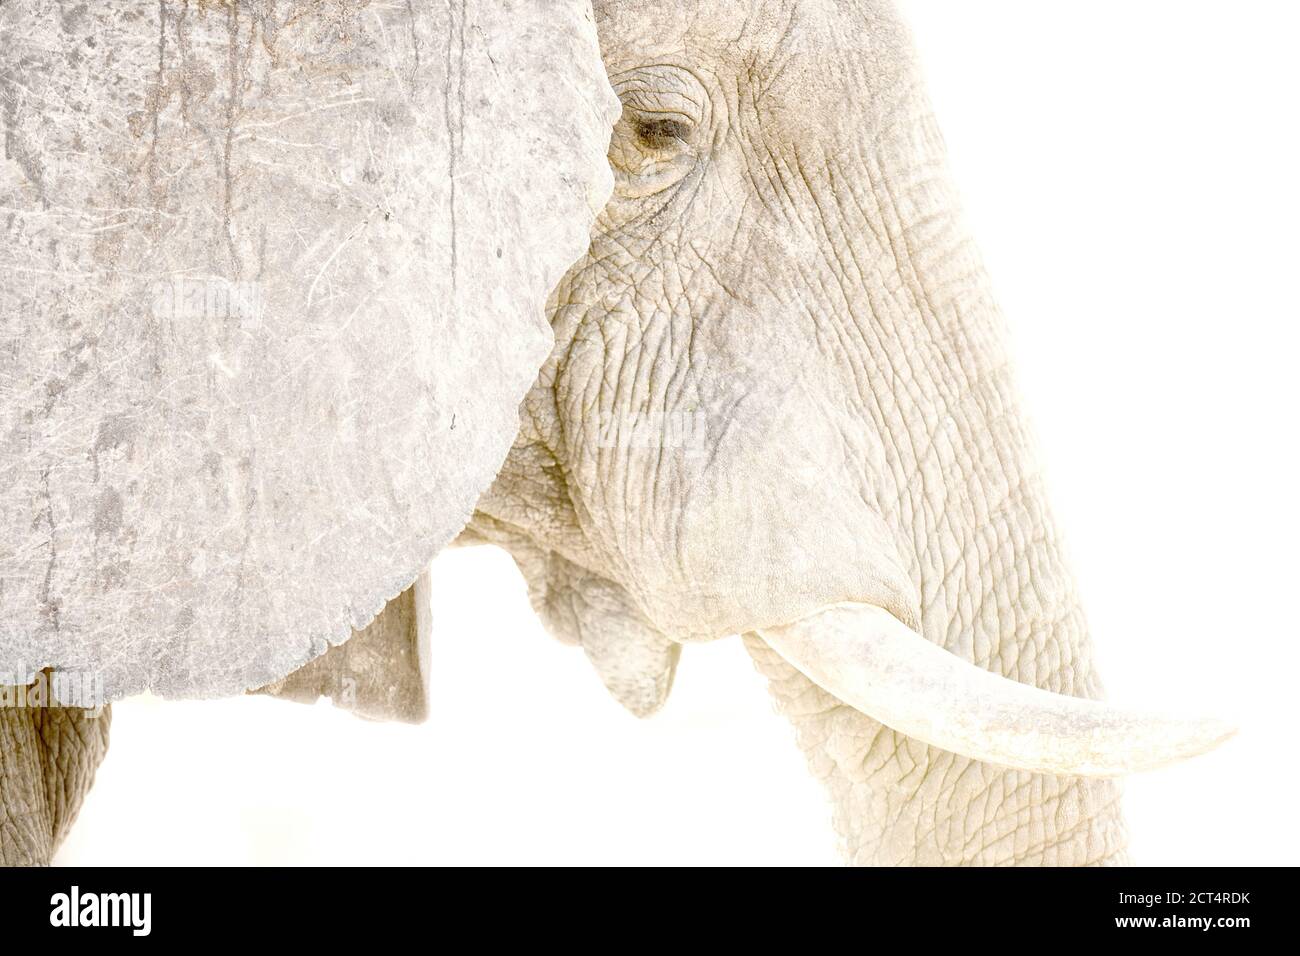 Nahaufnahme von Details eines afrikanischen Elefanten. Stockfoto